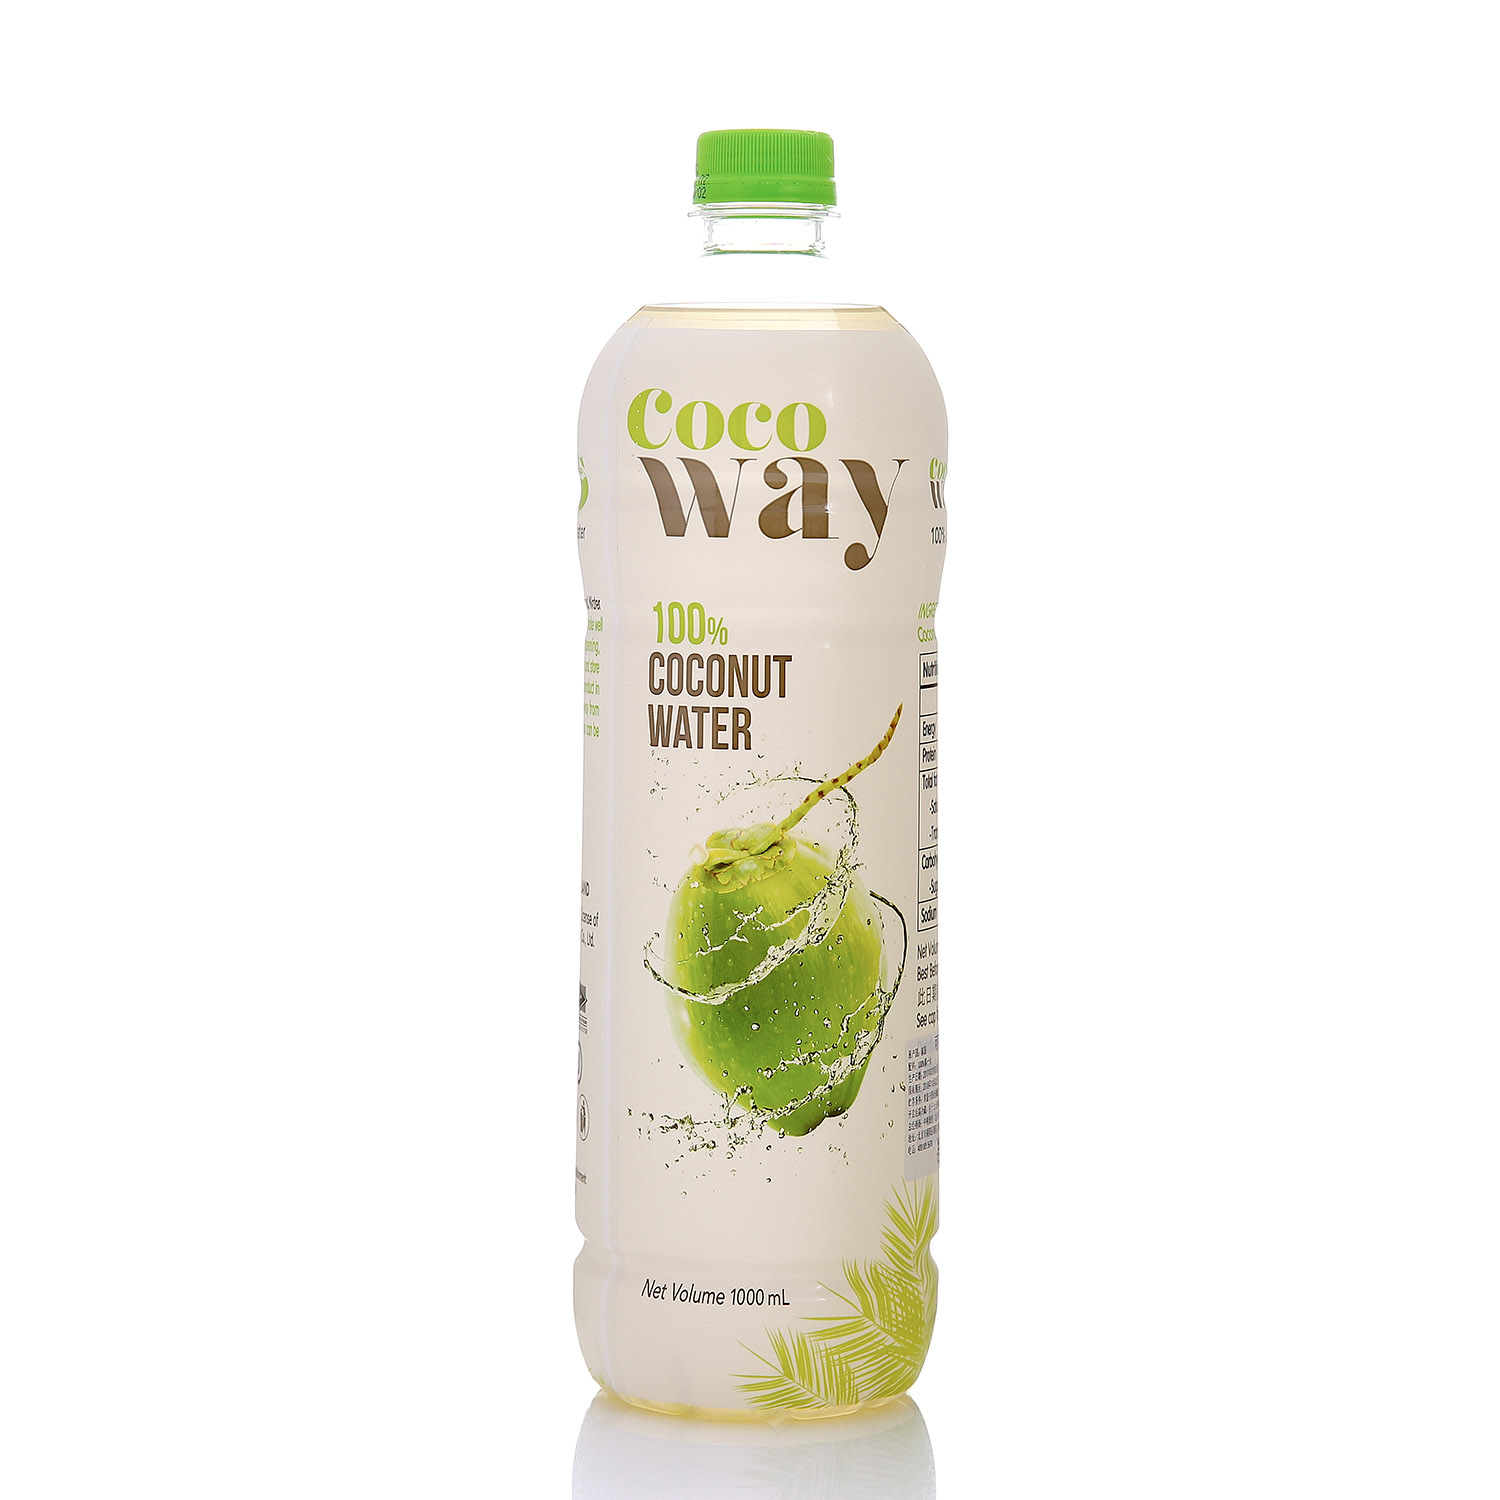 [中粮海外直采]Cocoway 可可维牌椰子水1L*6 (泰国进口)6瓶装